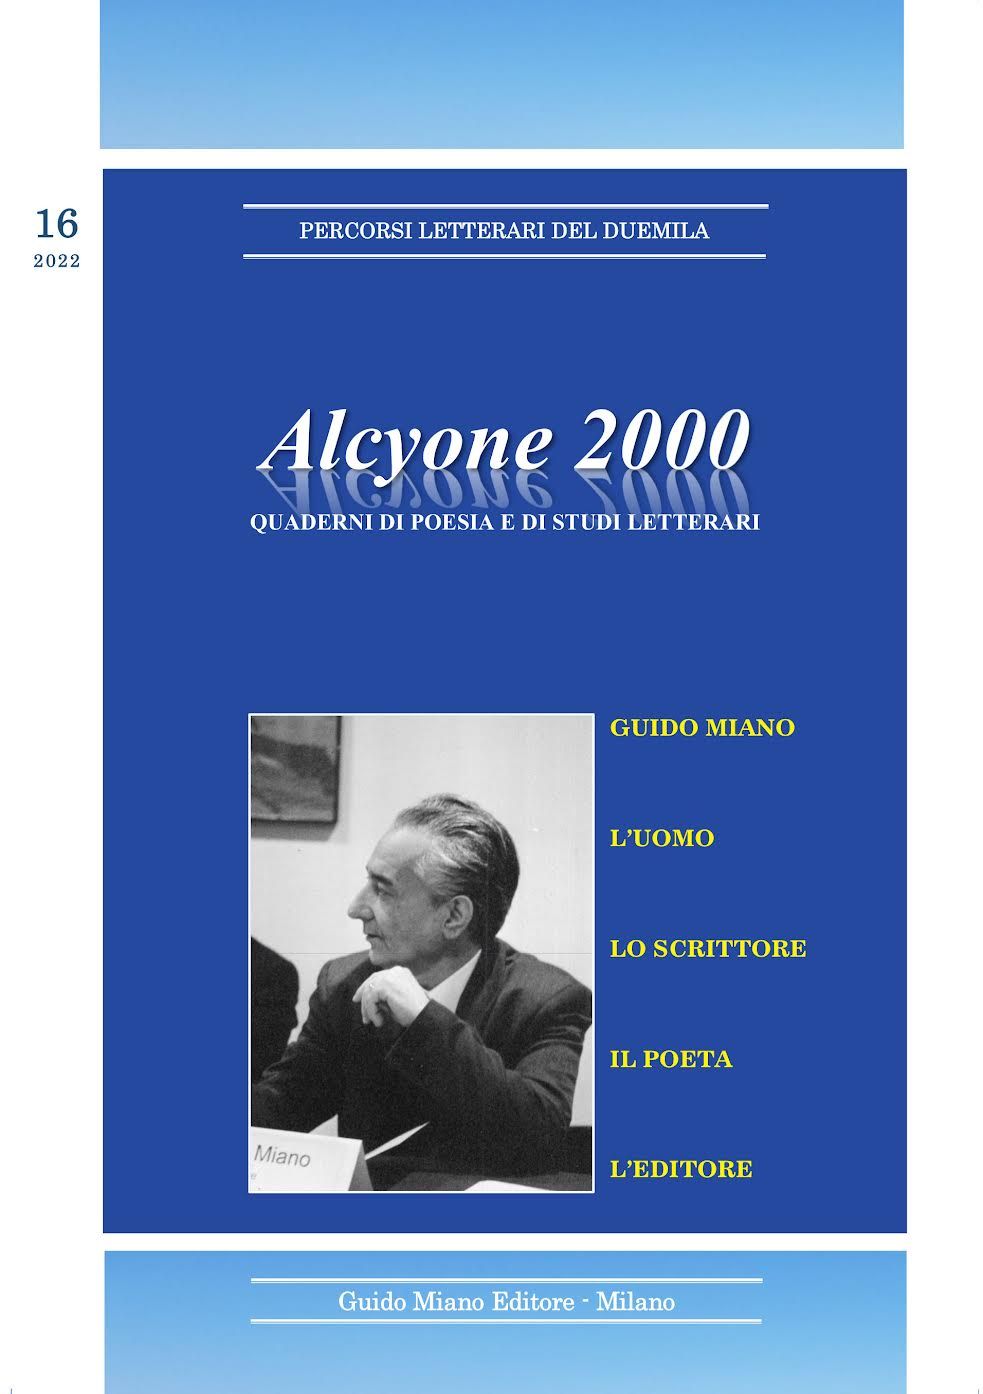 ALCYONE 2000 Quaderni di poesia e di studi letterari, vol. 16, 2022